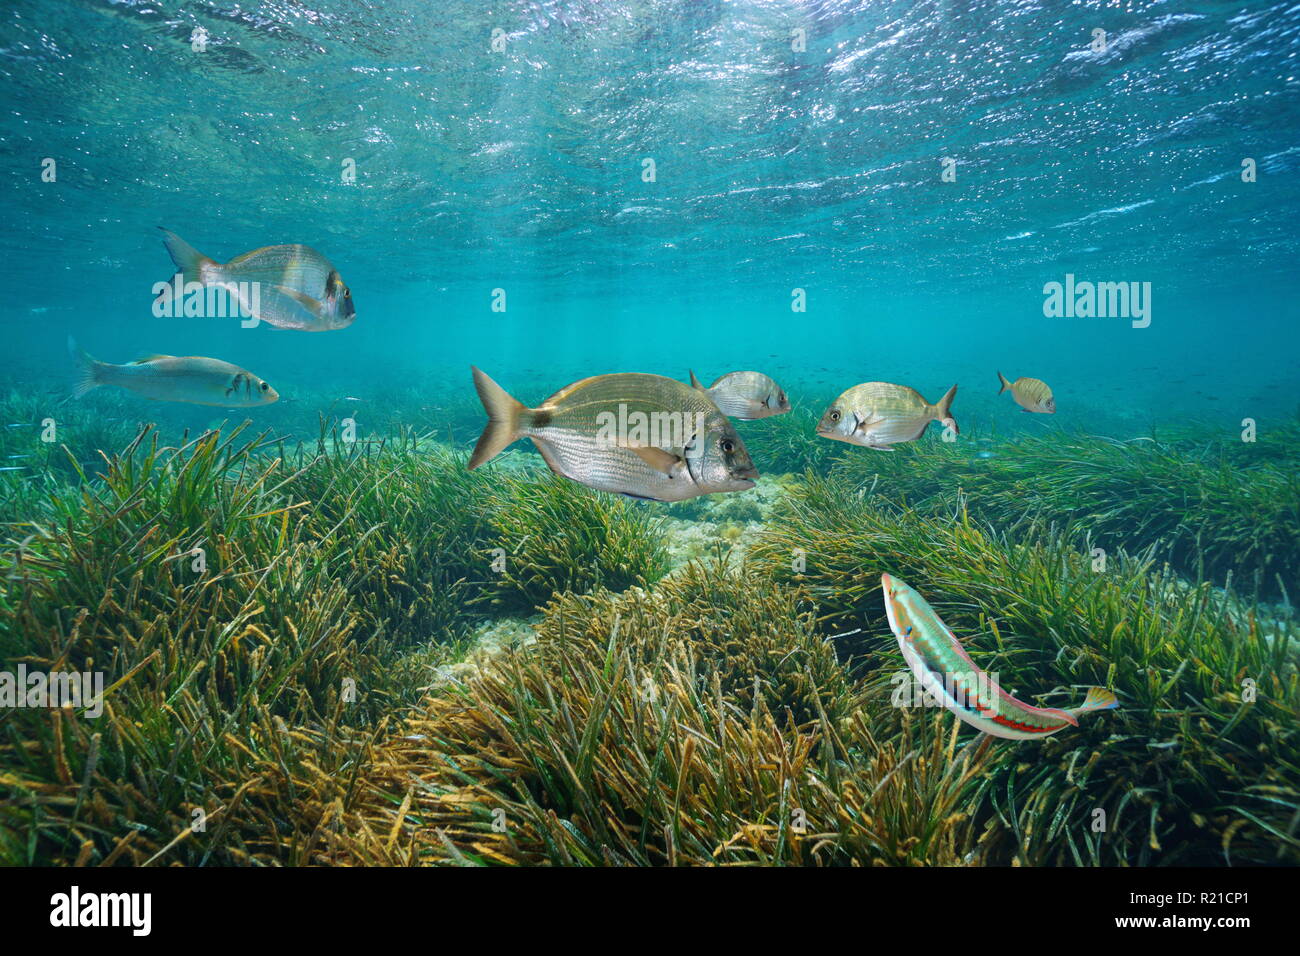 Peces mediterráneo subacuático con hierba de mar neptuno por debajo de la superficie del agua, Cabo de Palos, Cartagena, Murcia, España Foto de stock